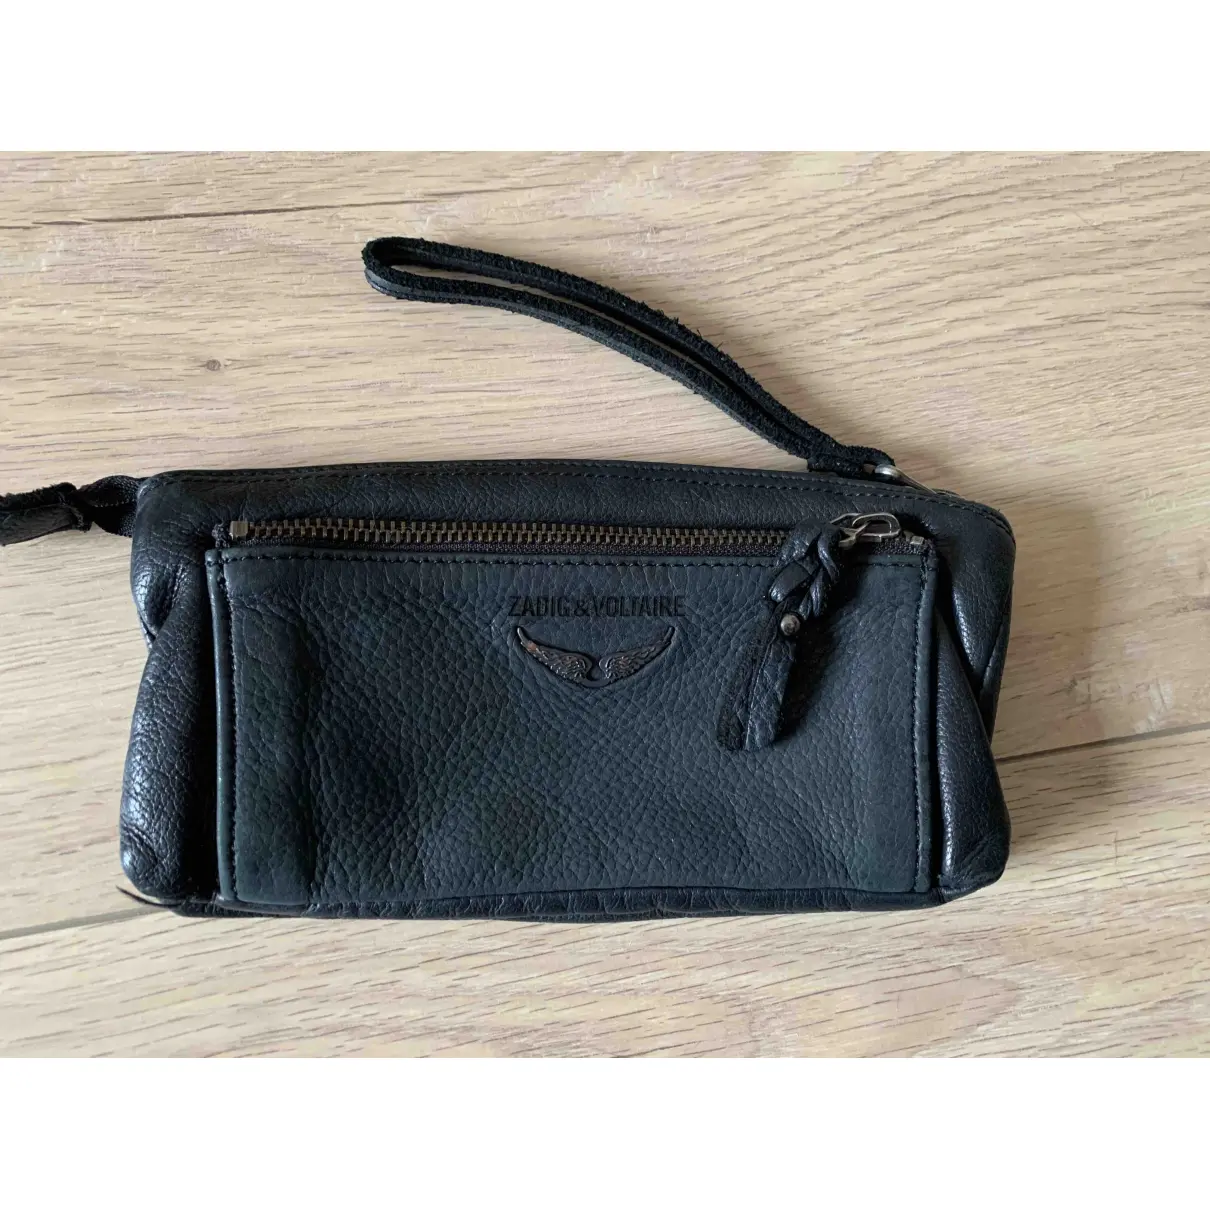 Buy Zadig & Voltaire Leather clutch bag online